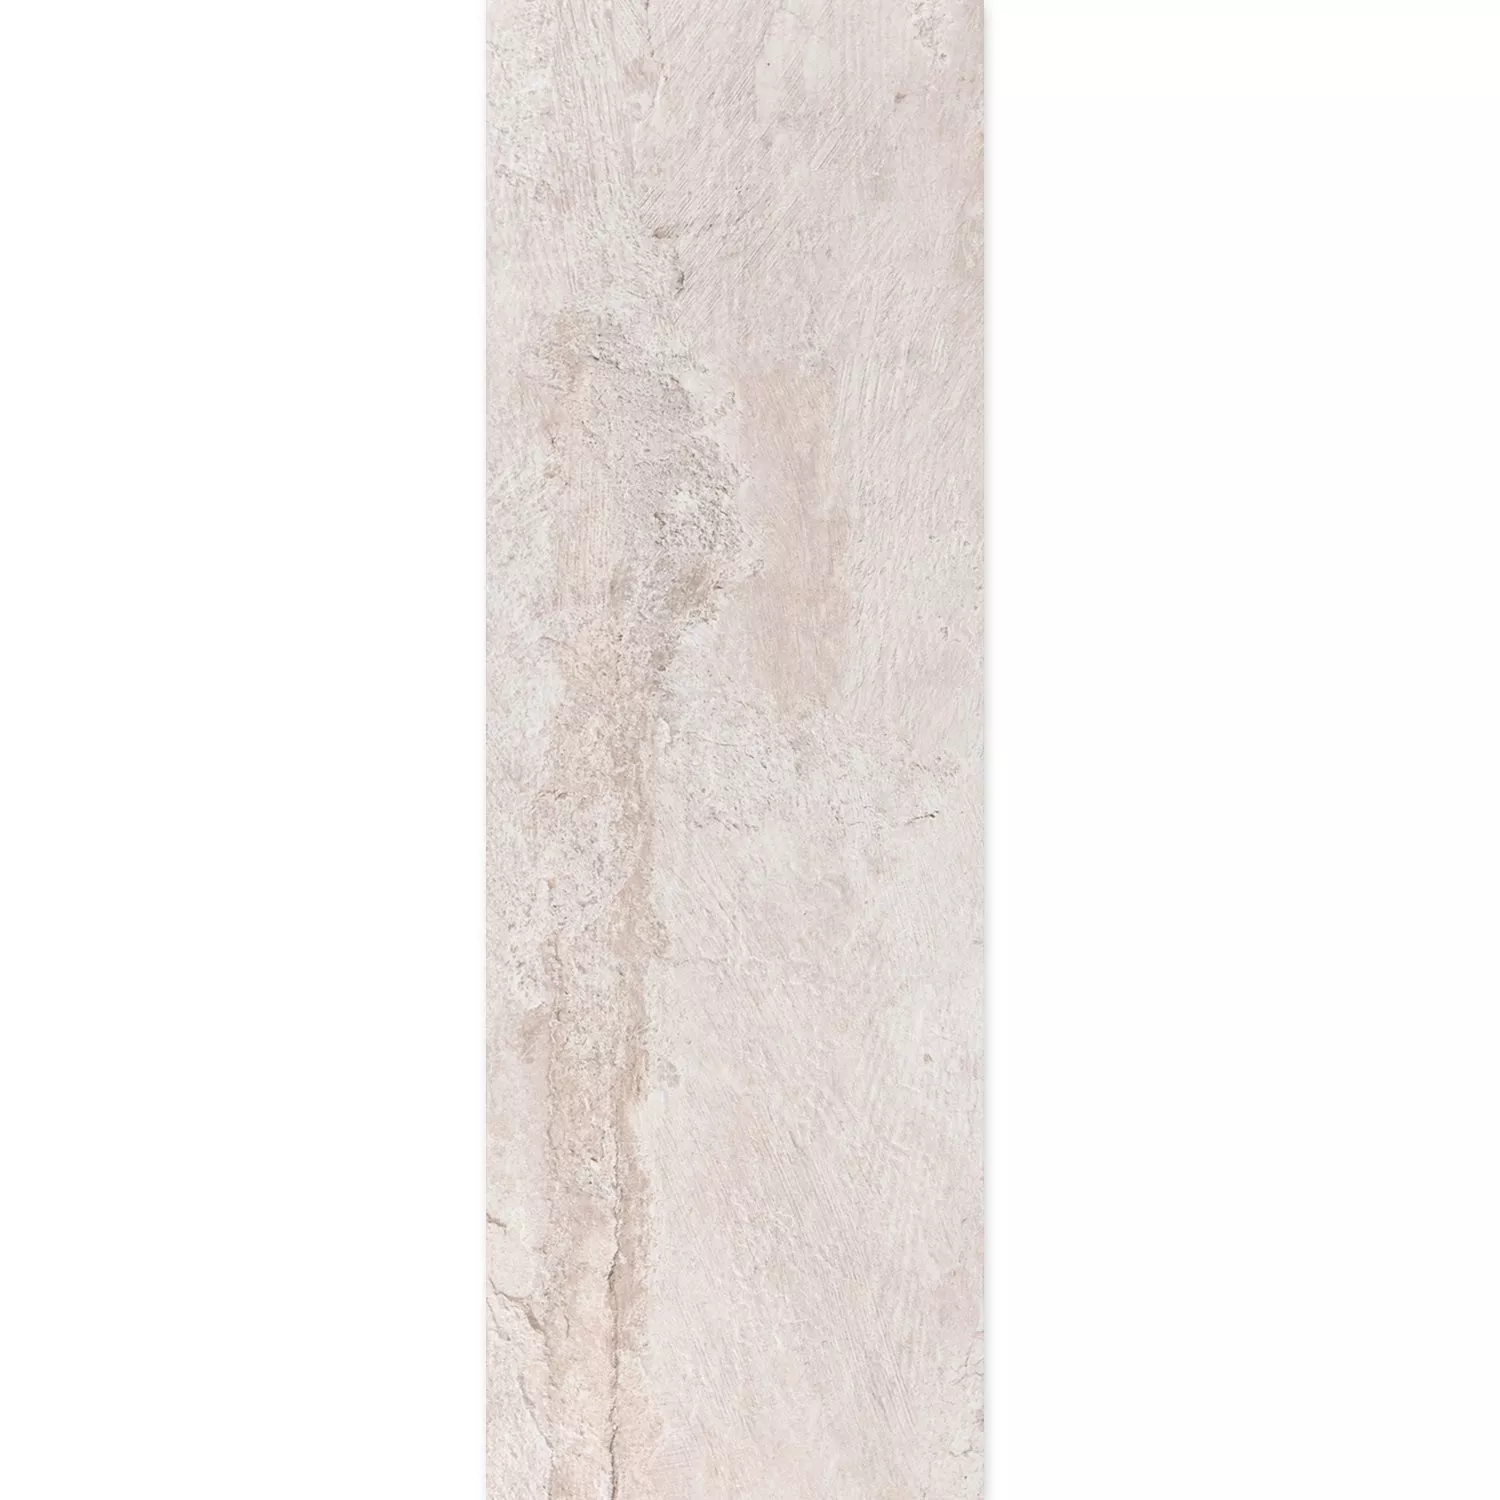 Muestra Pavimento Aspecto De Piedra Polaris R10 Blanco 30x120cm